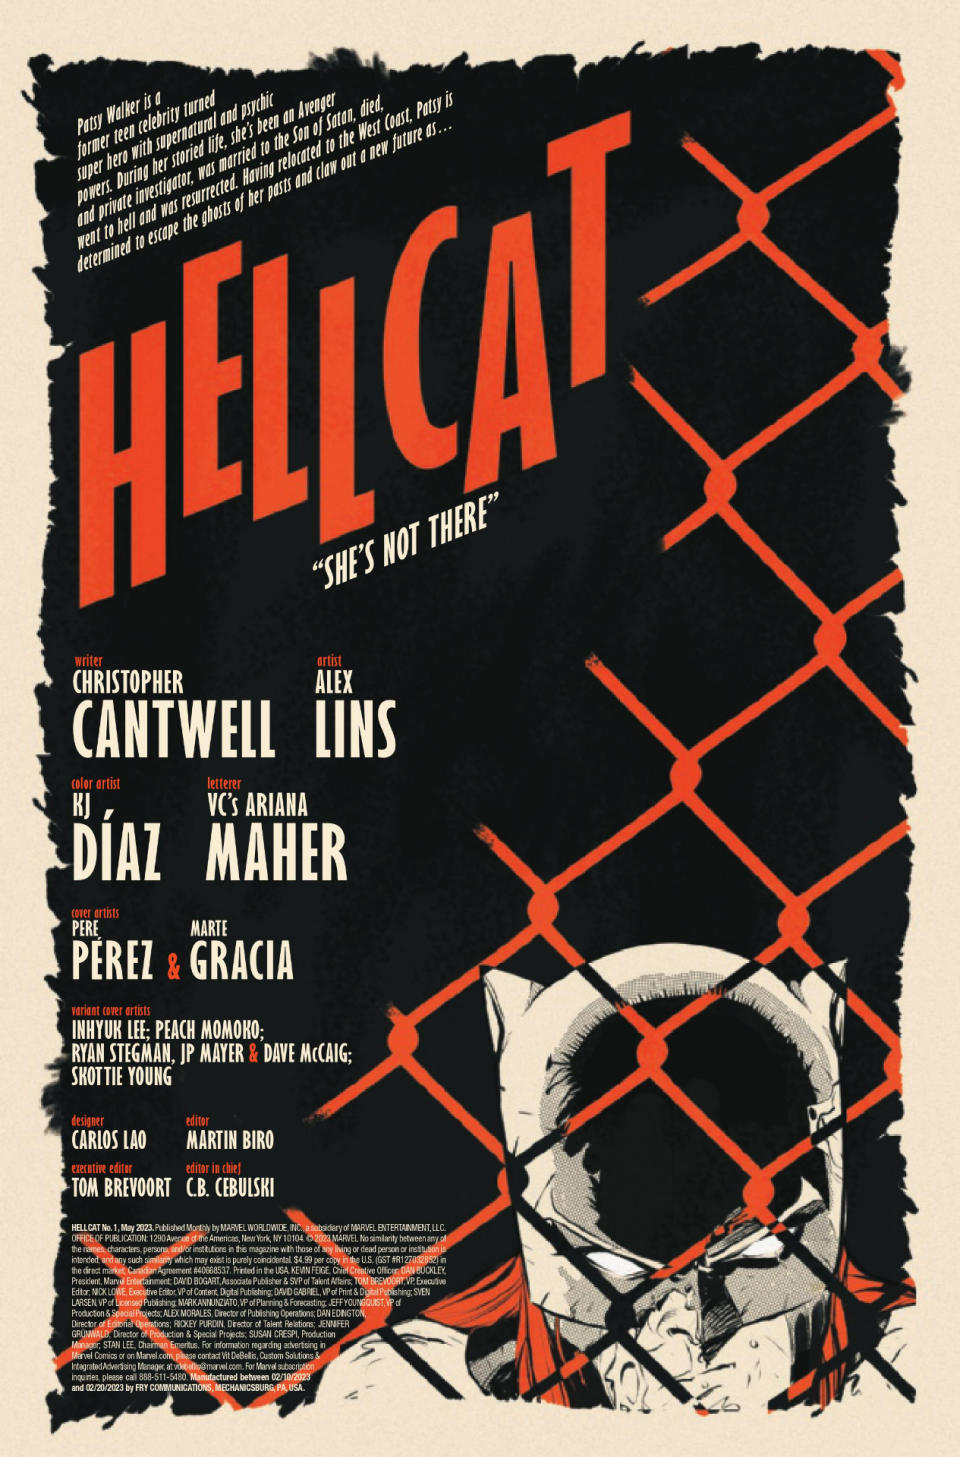 Hellcat #1 interior art